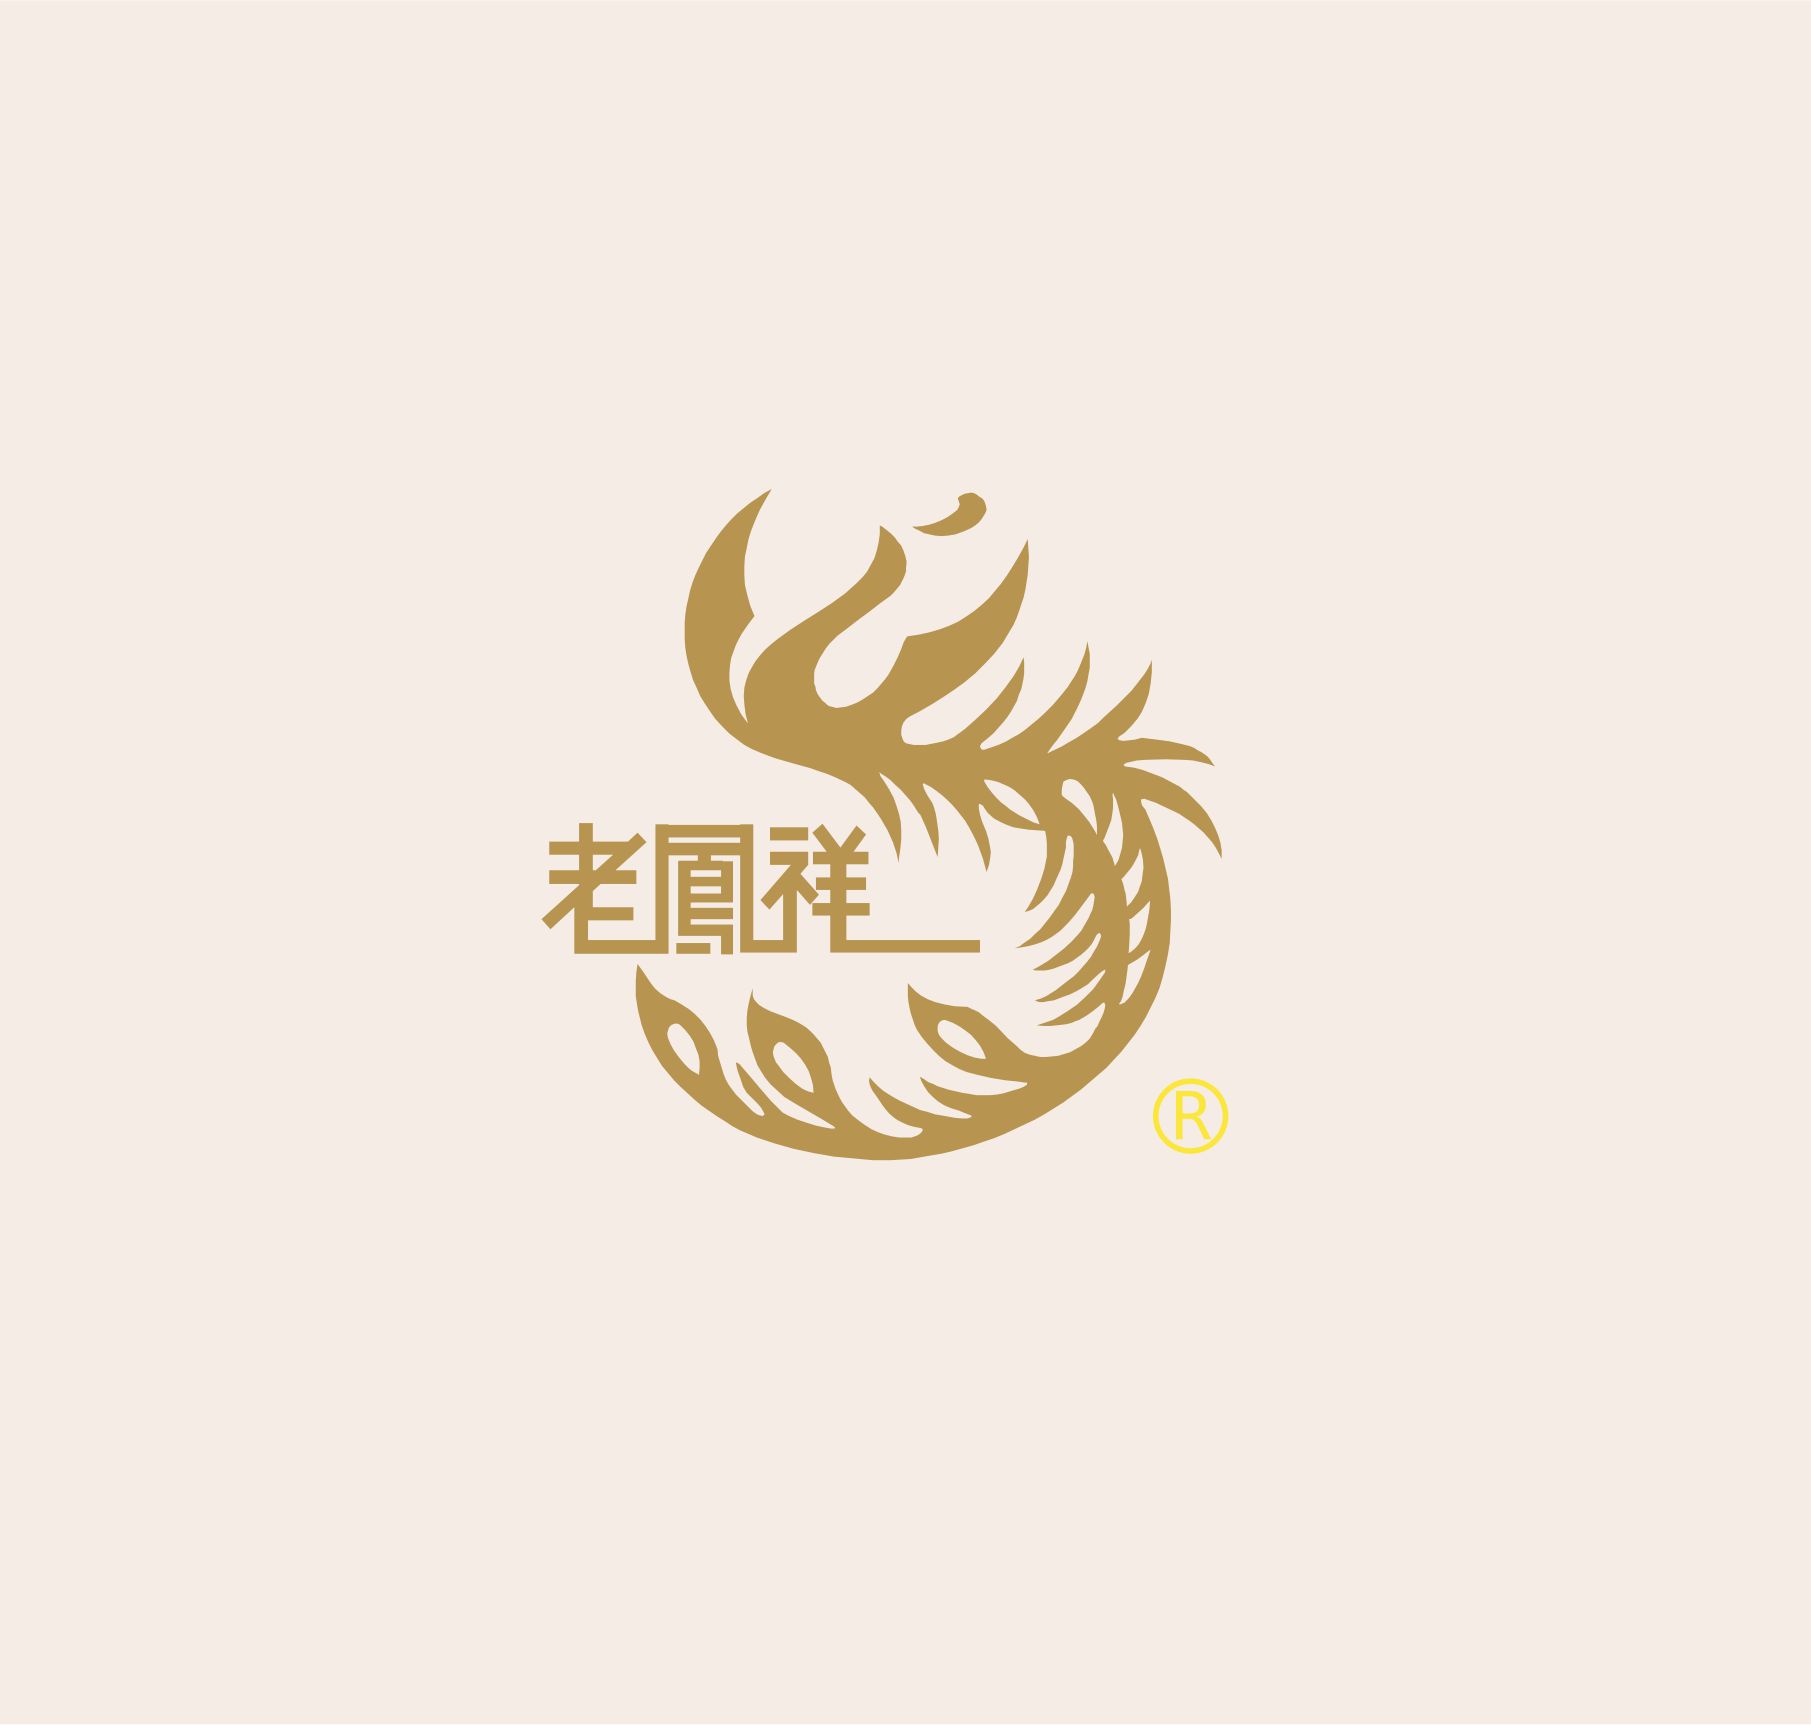 老凤祥logo水印图片